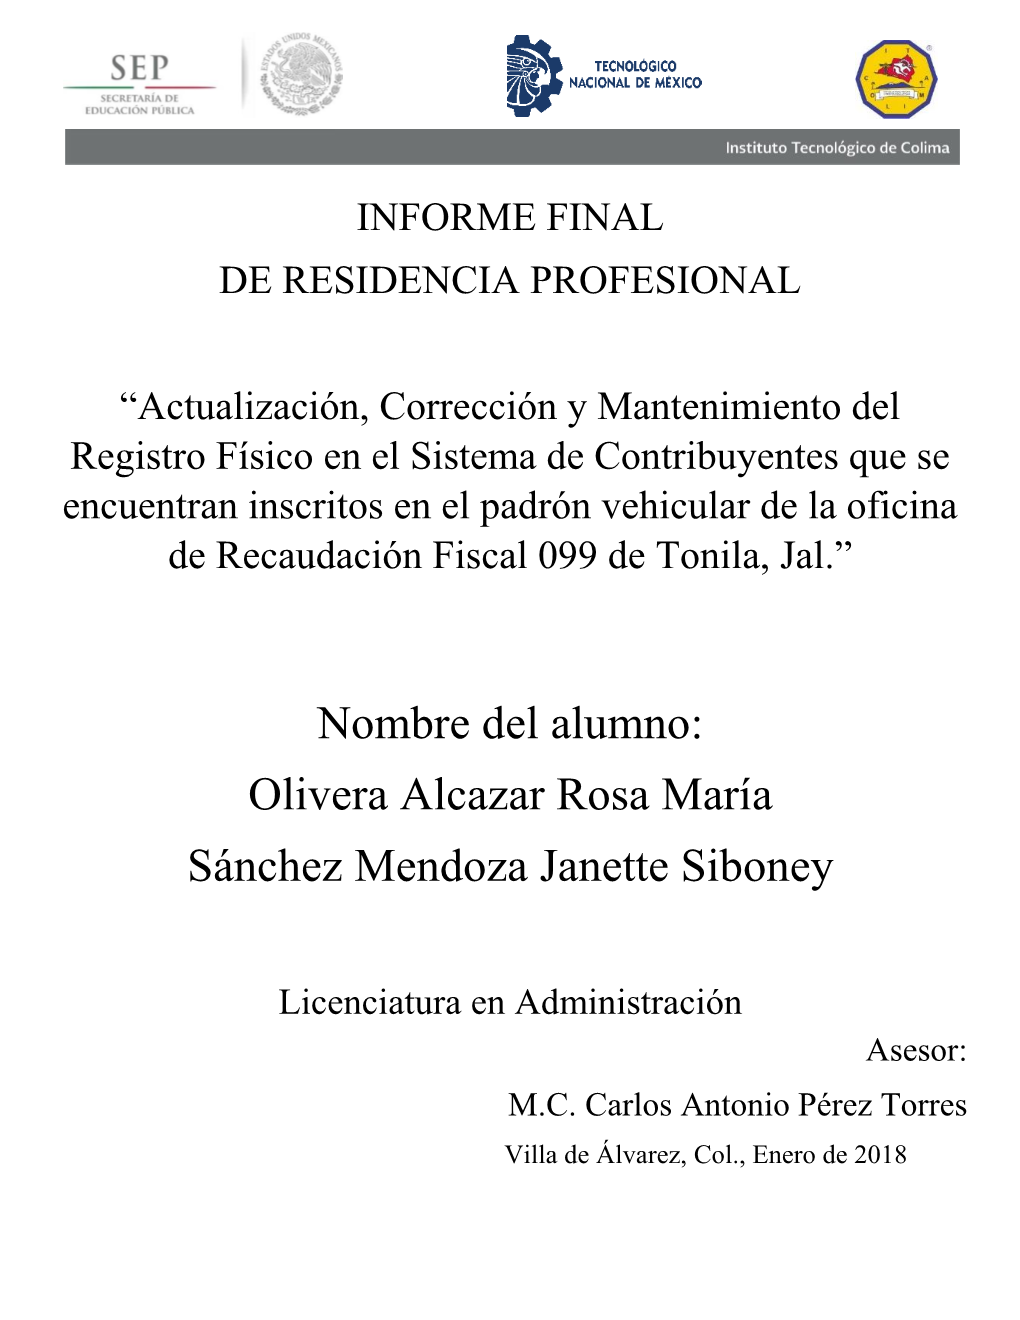 Olivera Alcazar Rosa María Sánchez Mendoza Janette Siboney